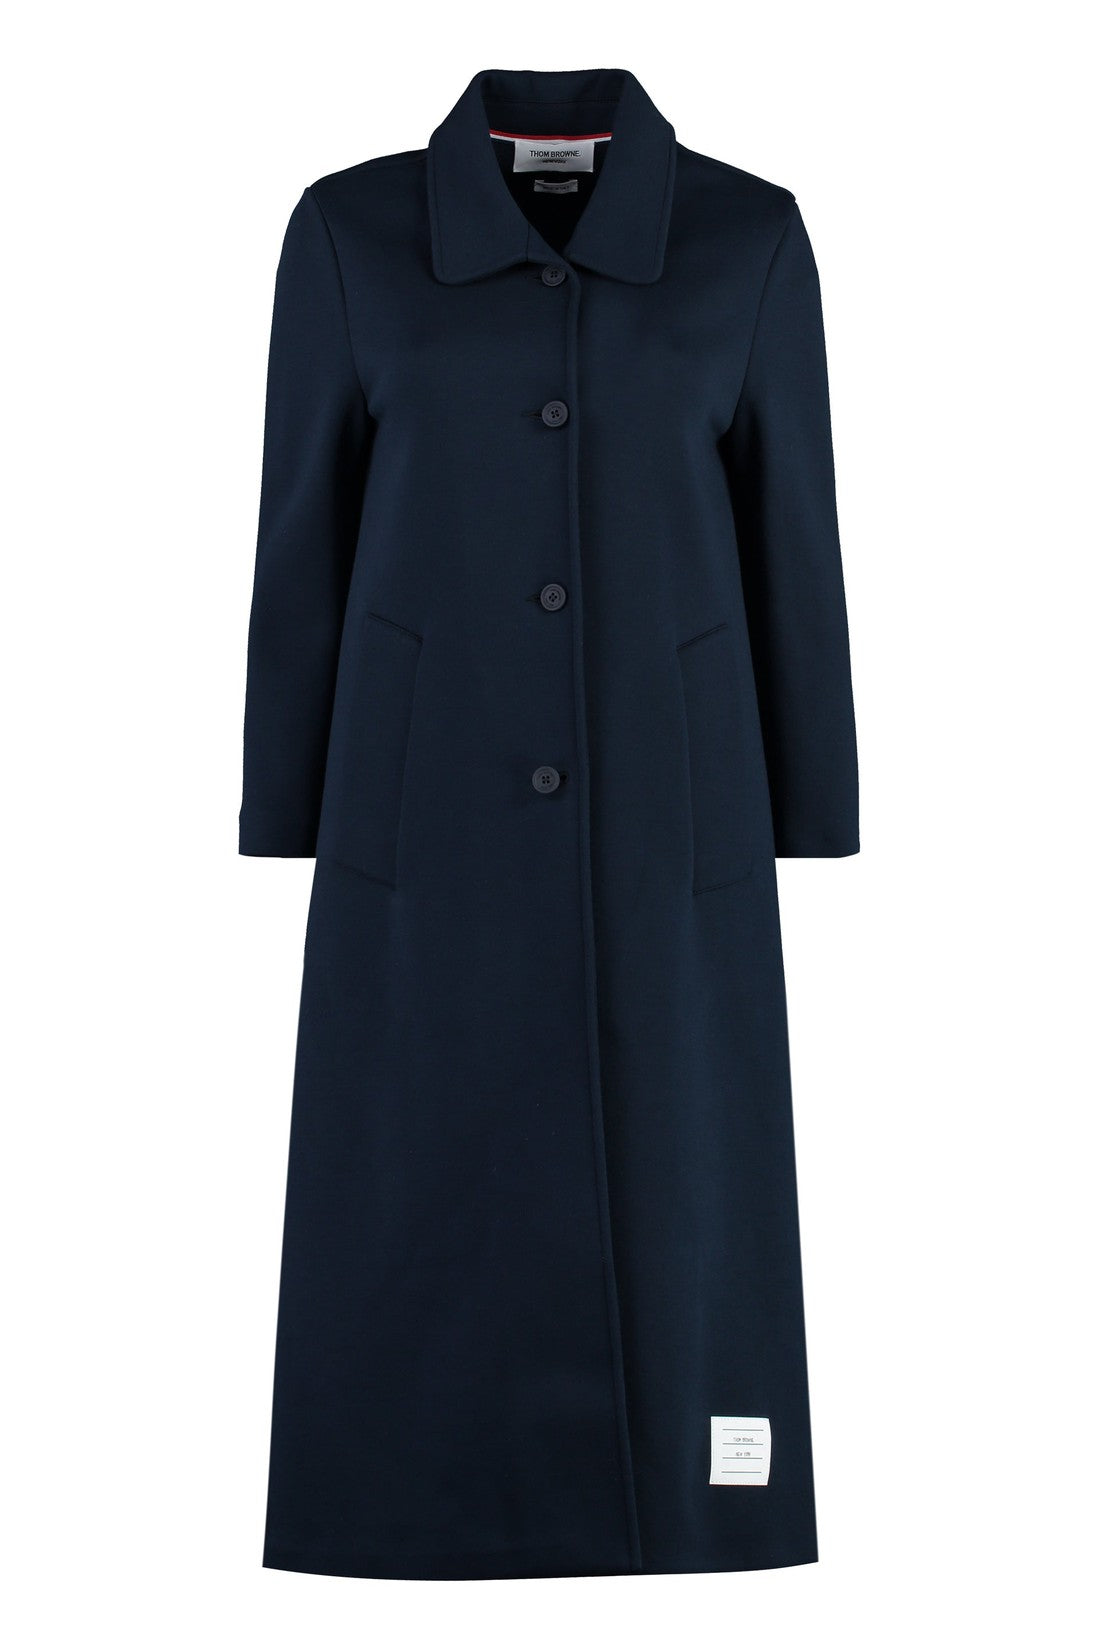 Thom Browne-OUTLET-SALE-Cotton coat-ARCHIVIST